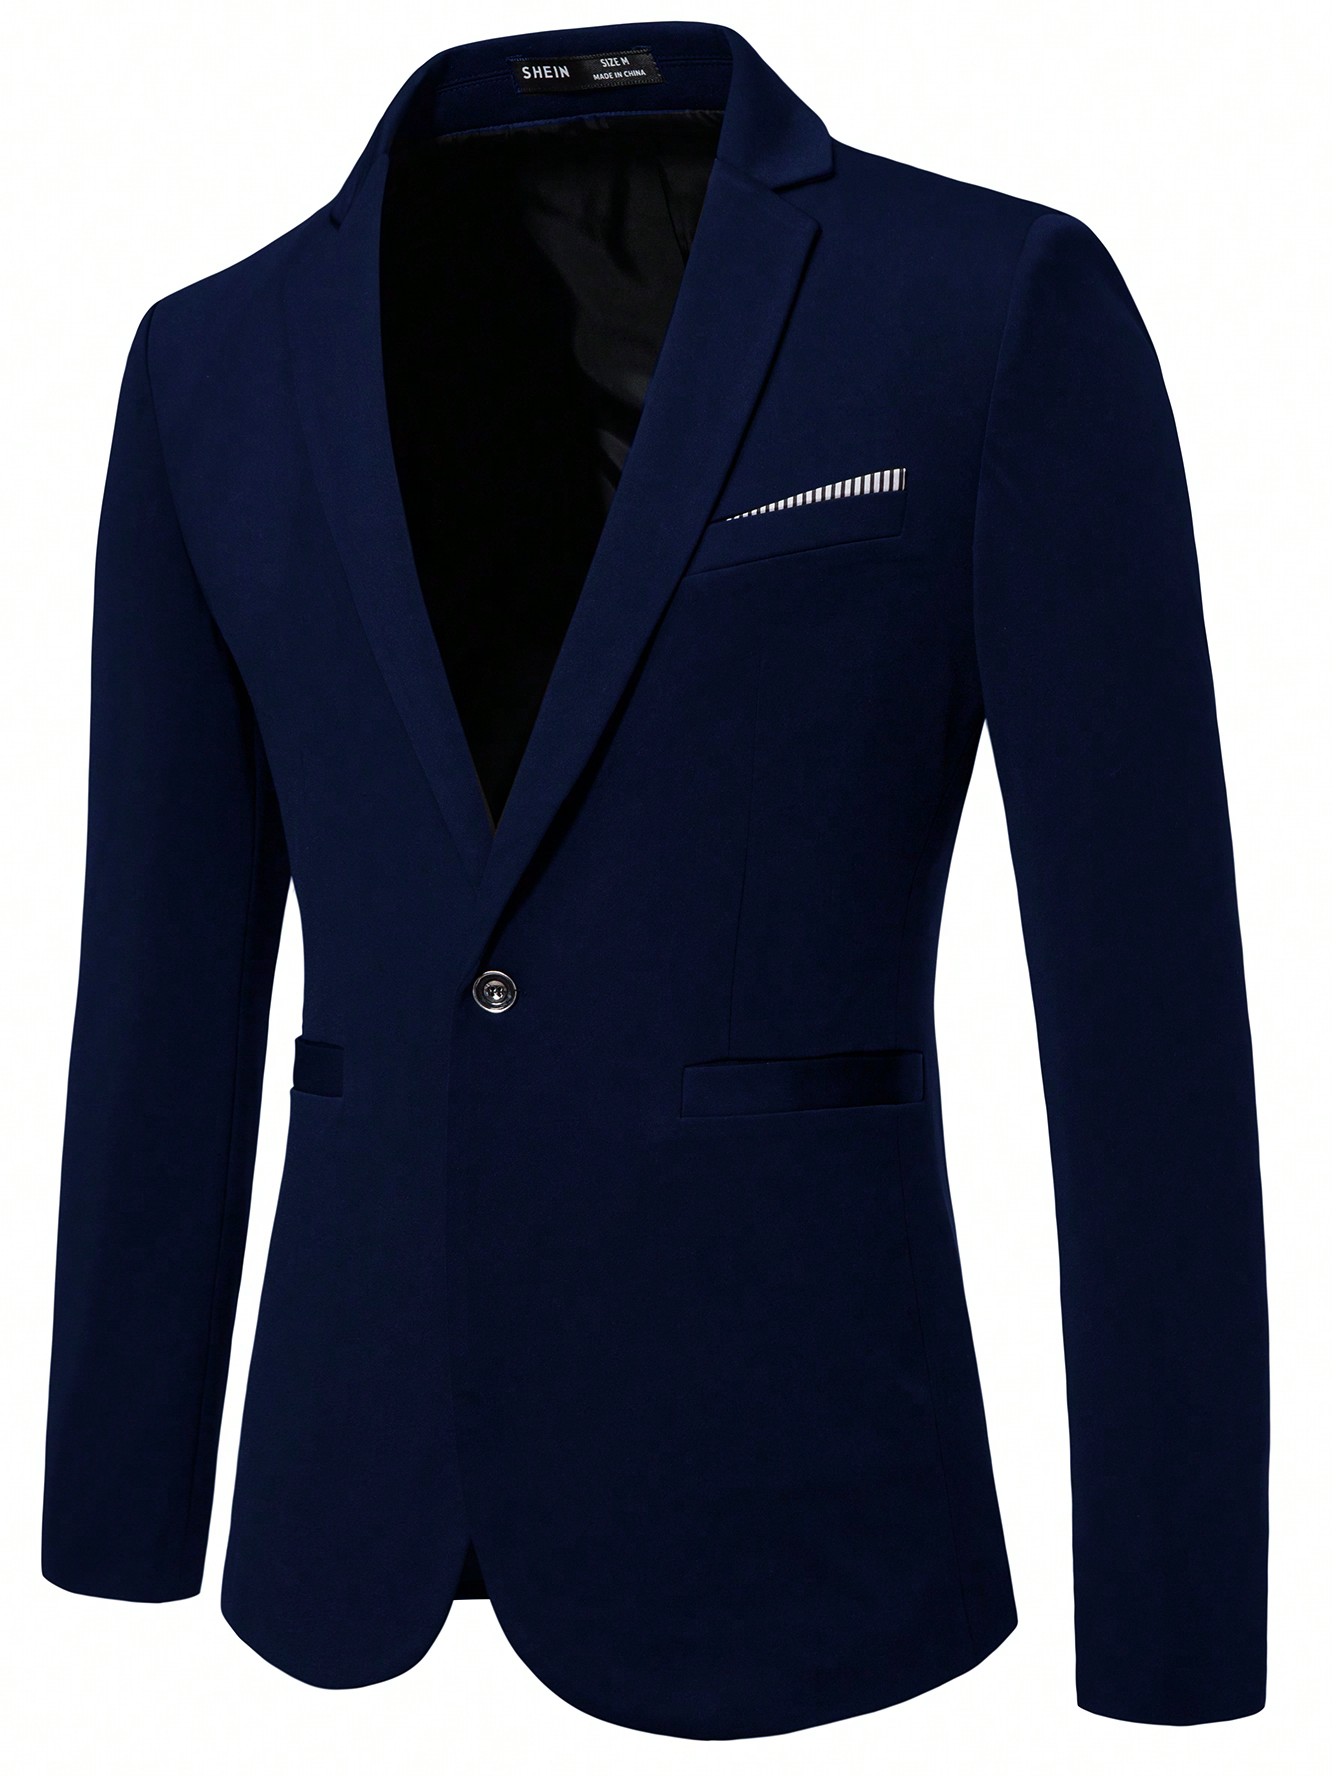 Мужской пиджак с длинными рукавами и зубчатыми лацканами Manfinity Mode, темно-синий мужской однобортный трикотажный кардиган с лацканами и длинными рукавами